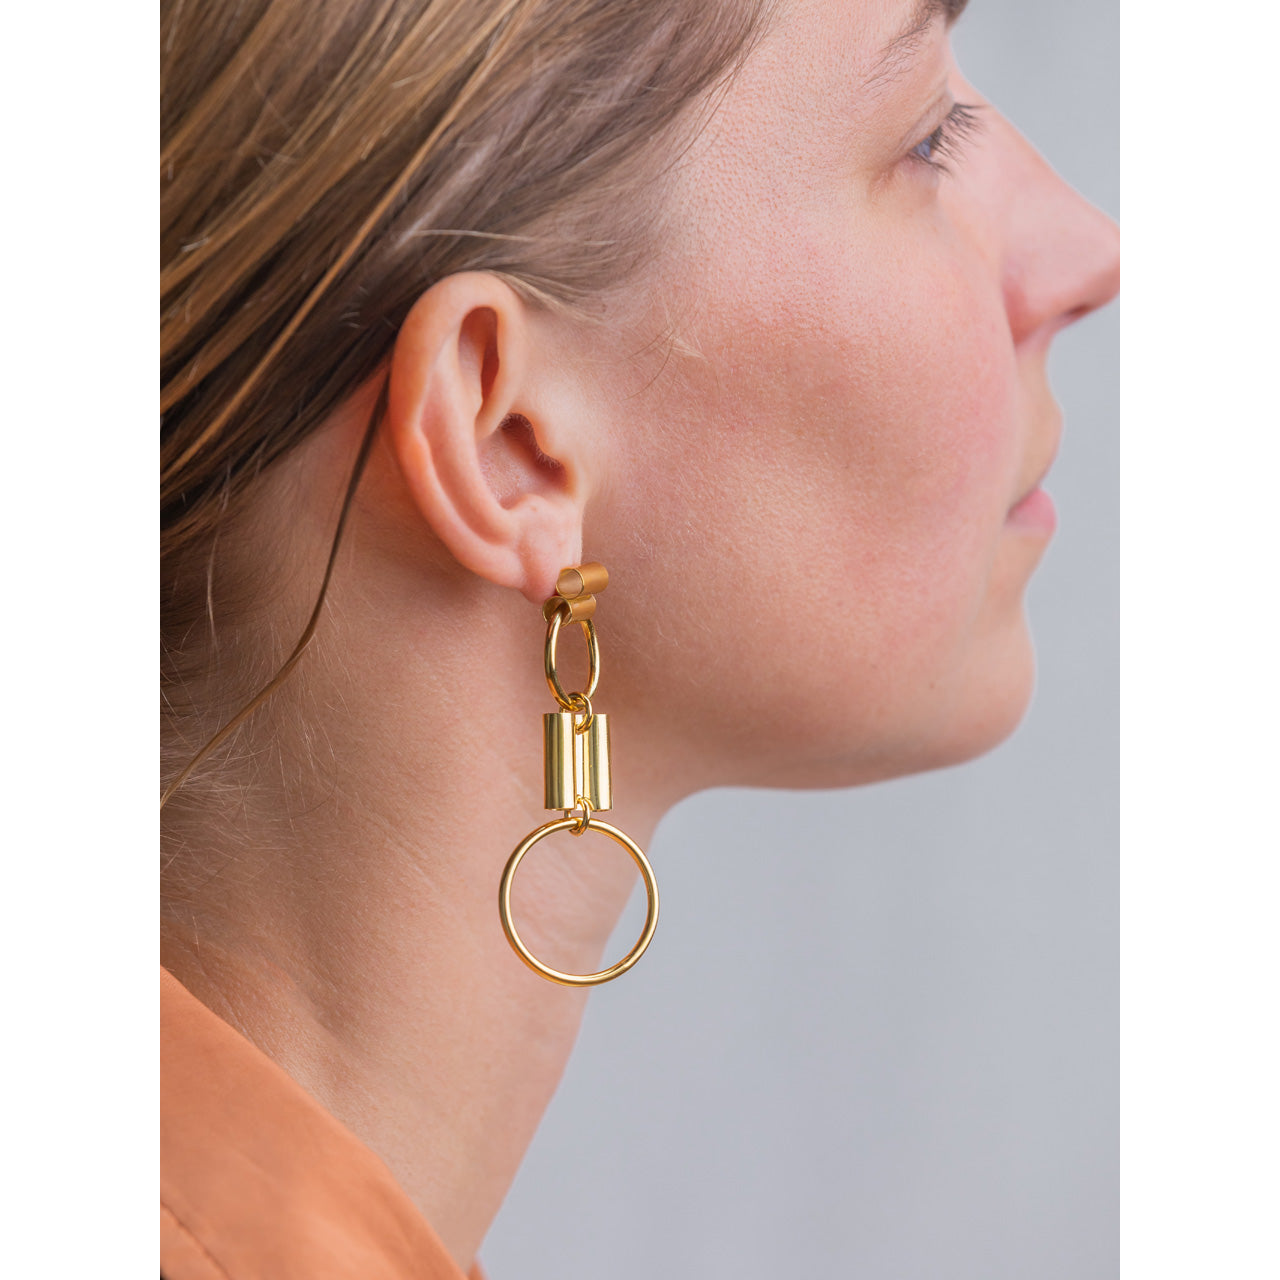 gold hoops tubes earrings